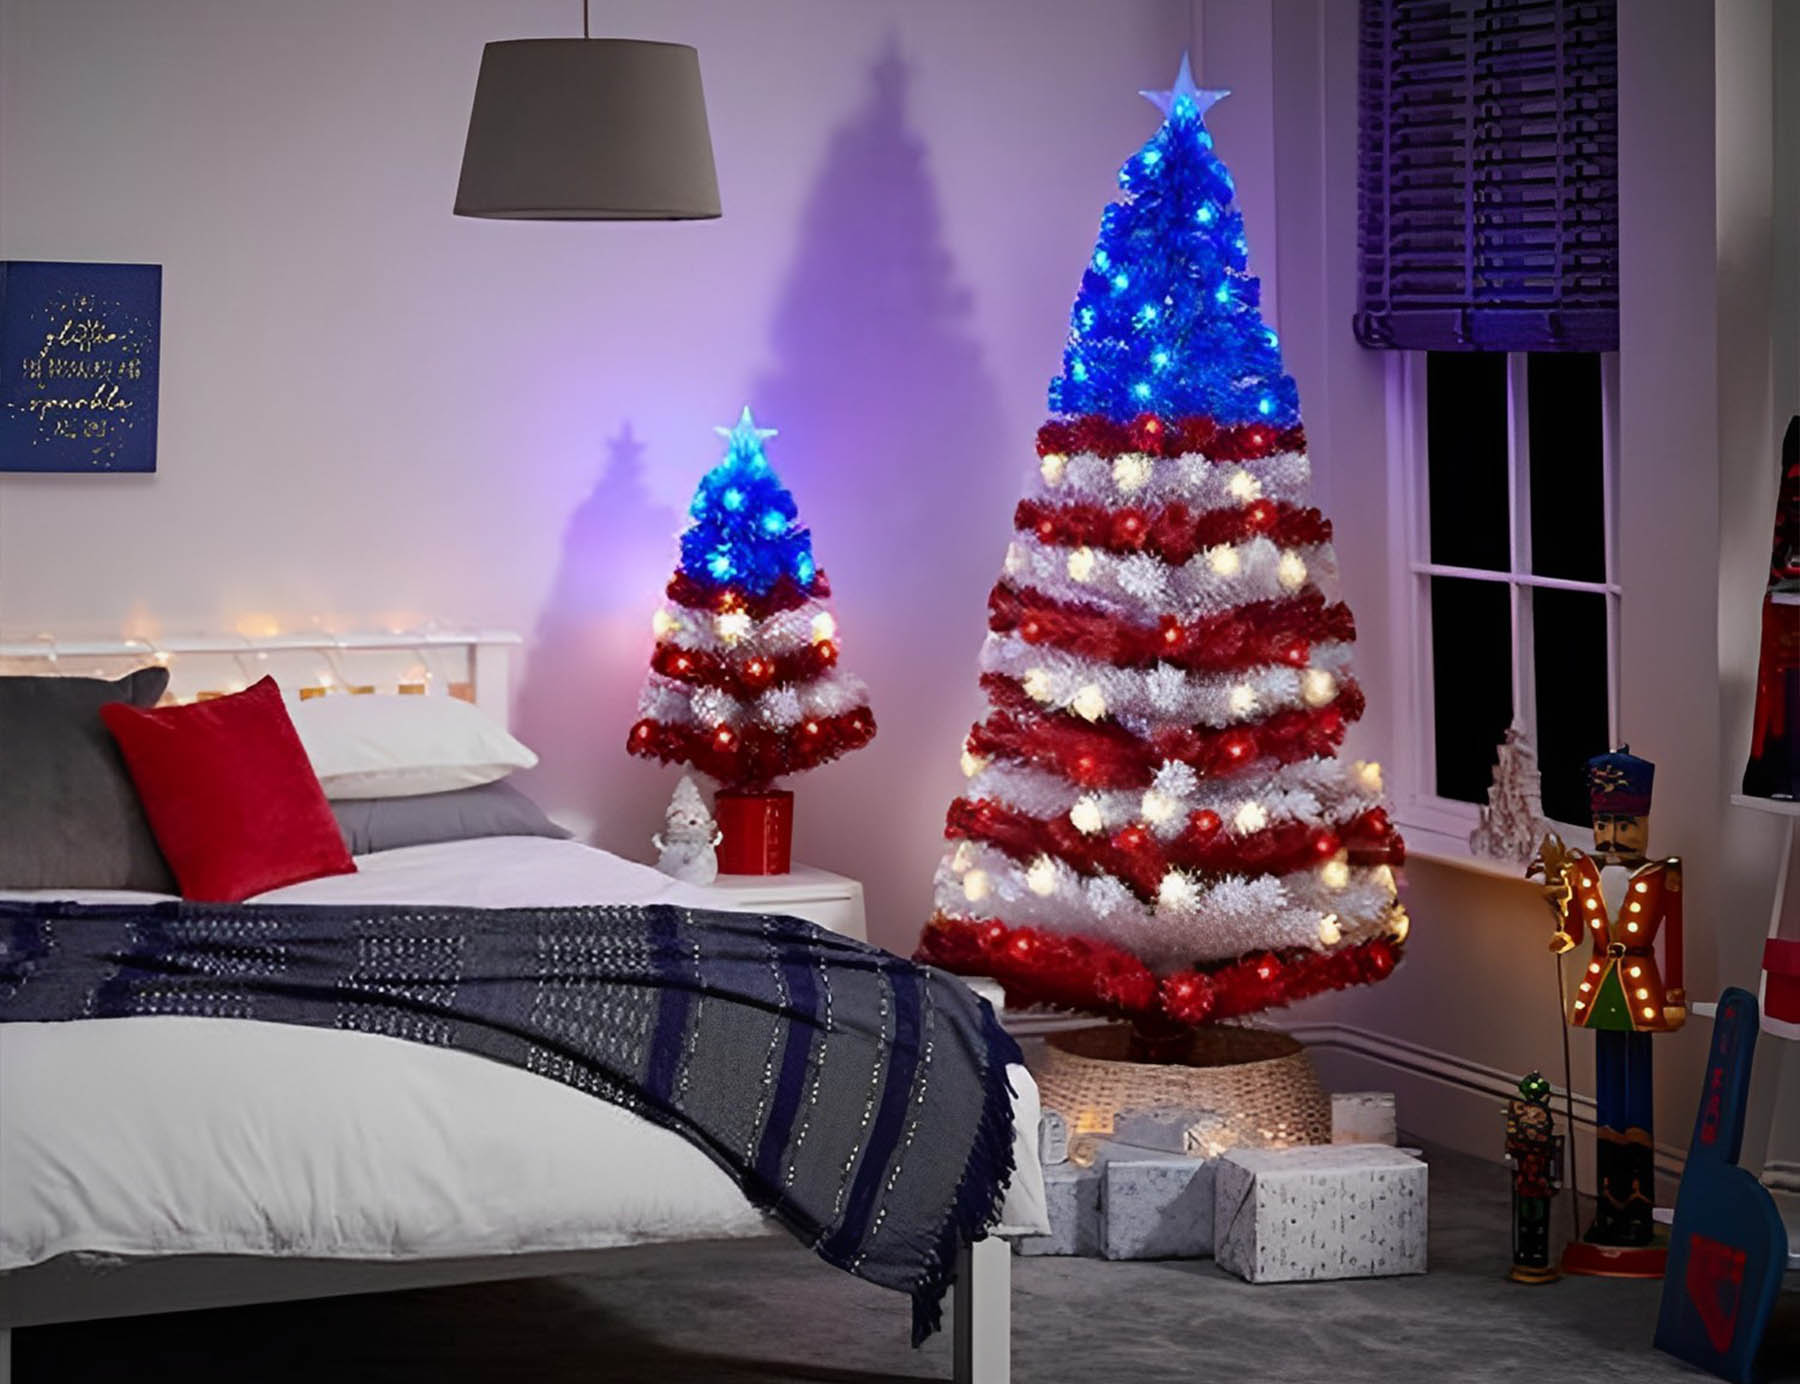 Ý tưởng trang trí phòng ngủ Giáng sinh bằng dây đèn để tăng thêm vẻ đẹp